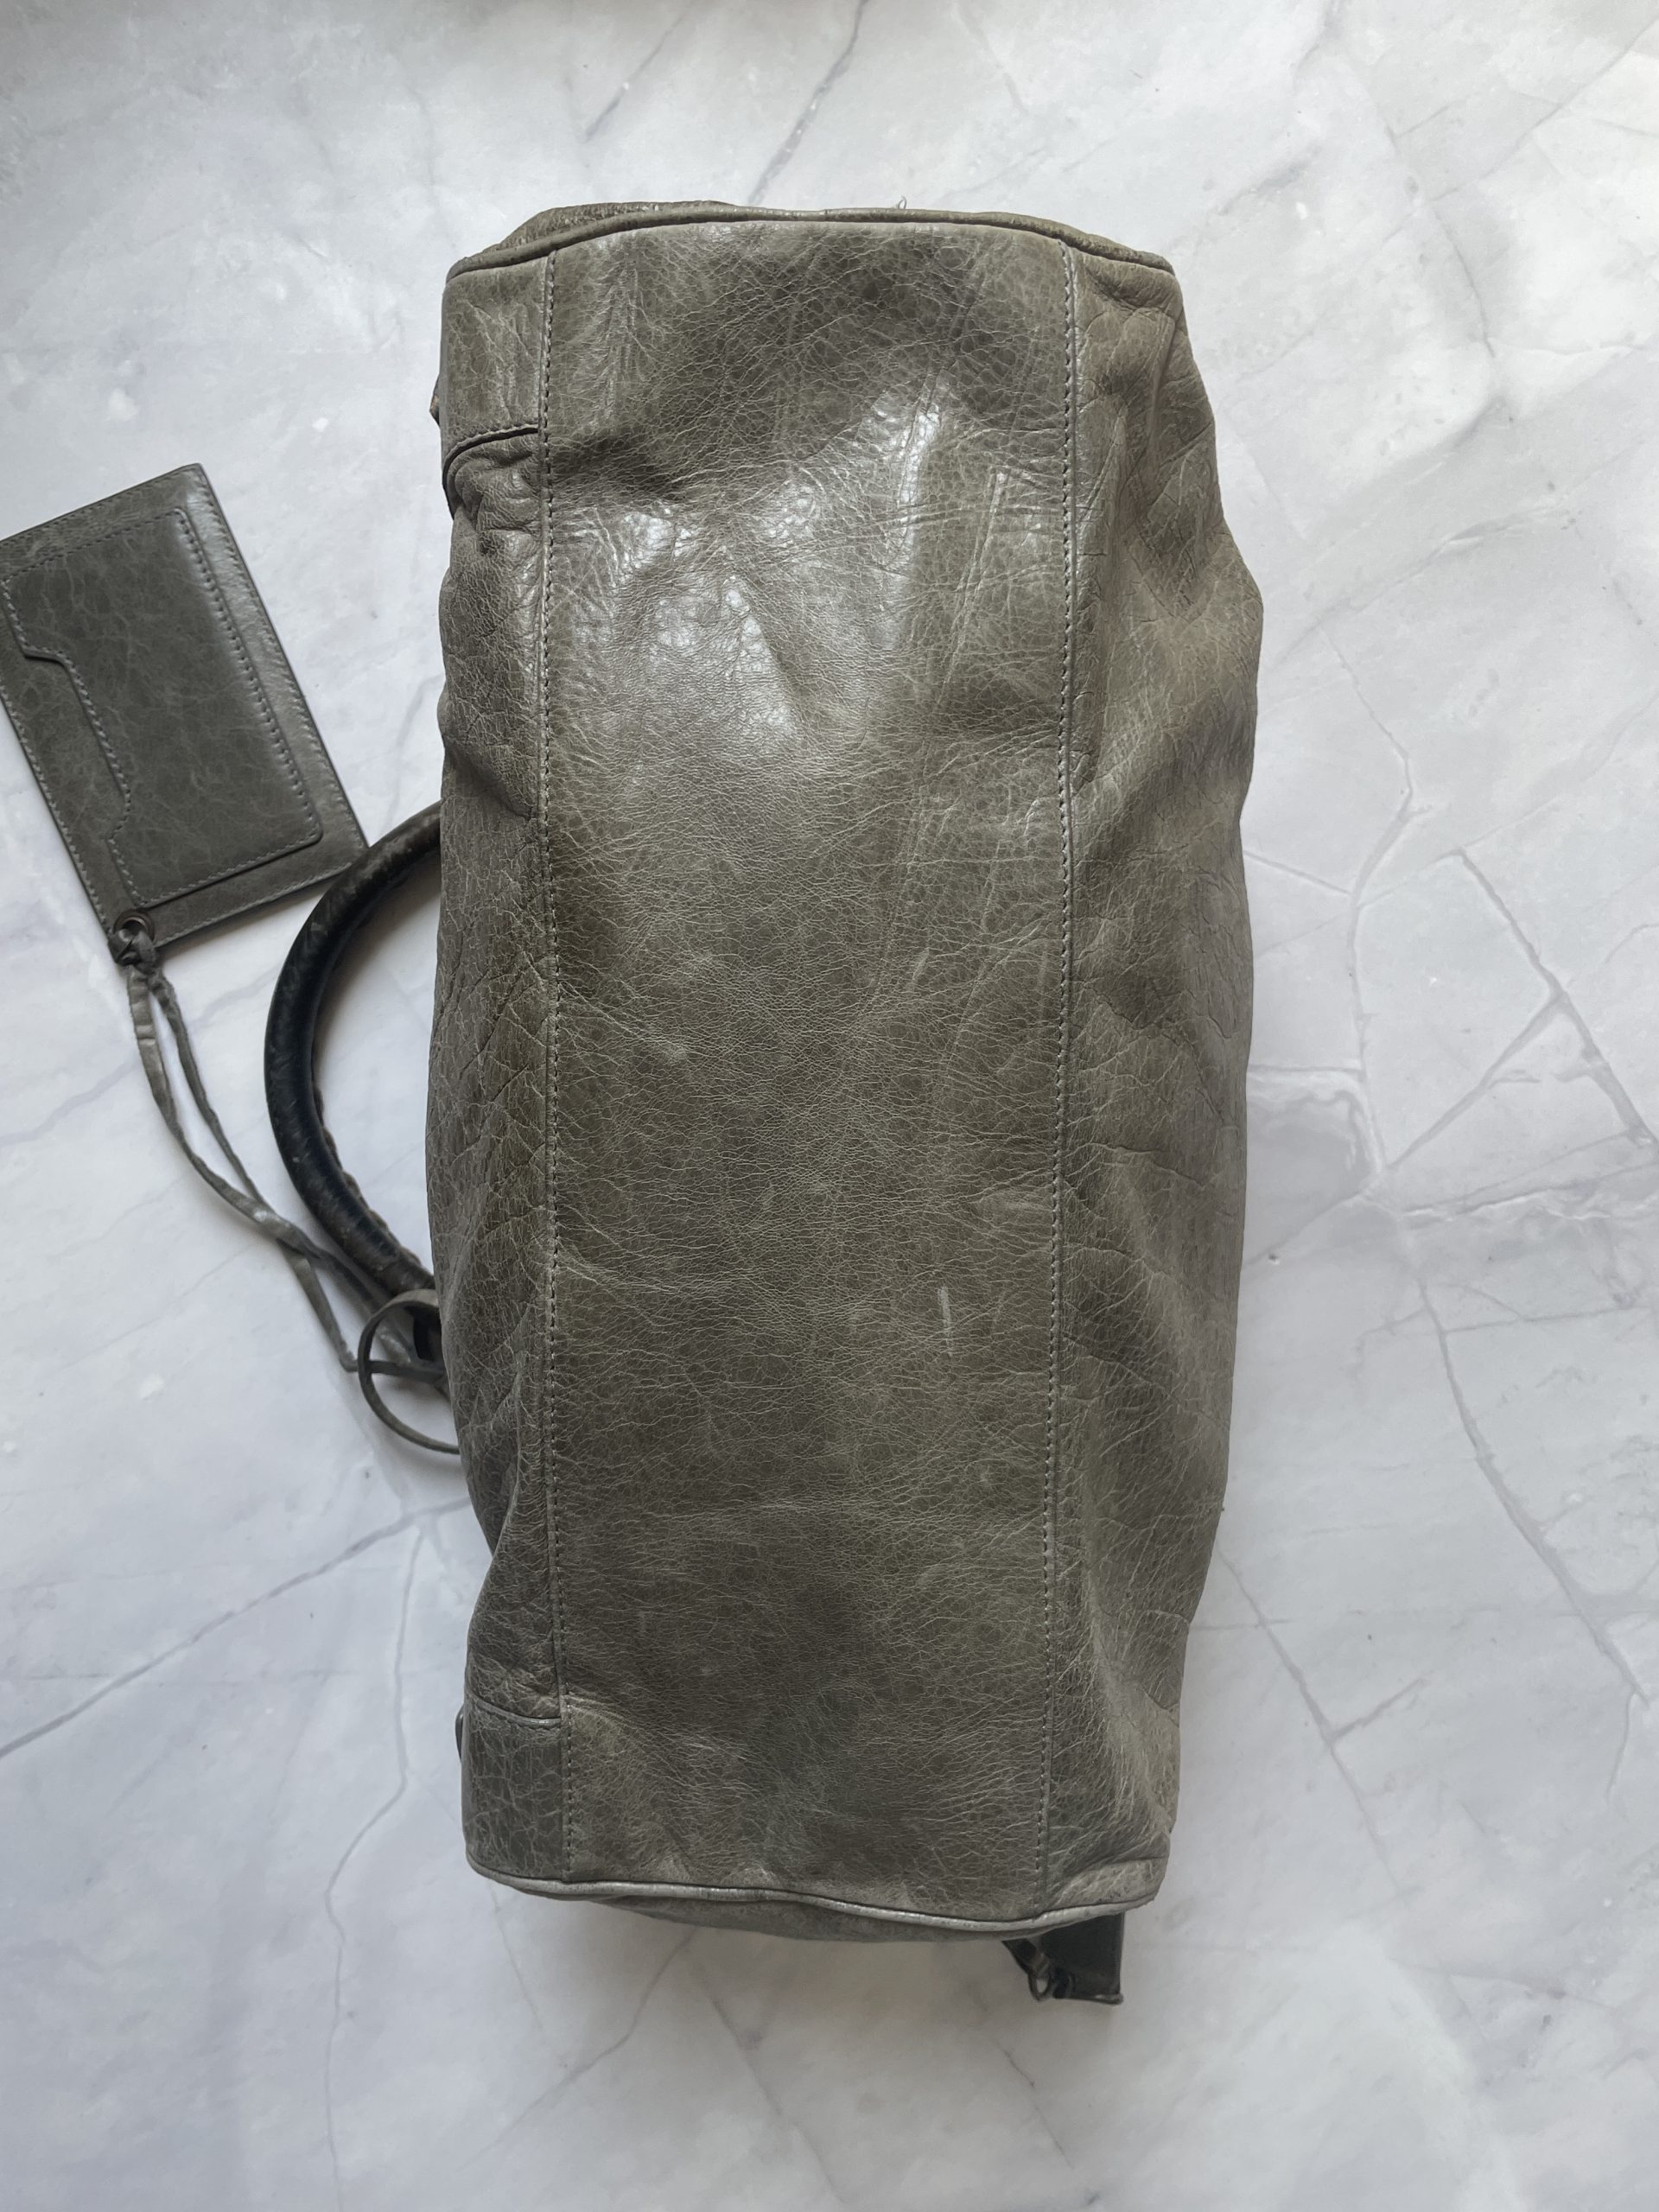 Balenciaga Light Grey City Bag with Crossbody Strap – The Hangout